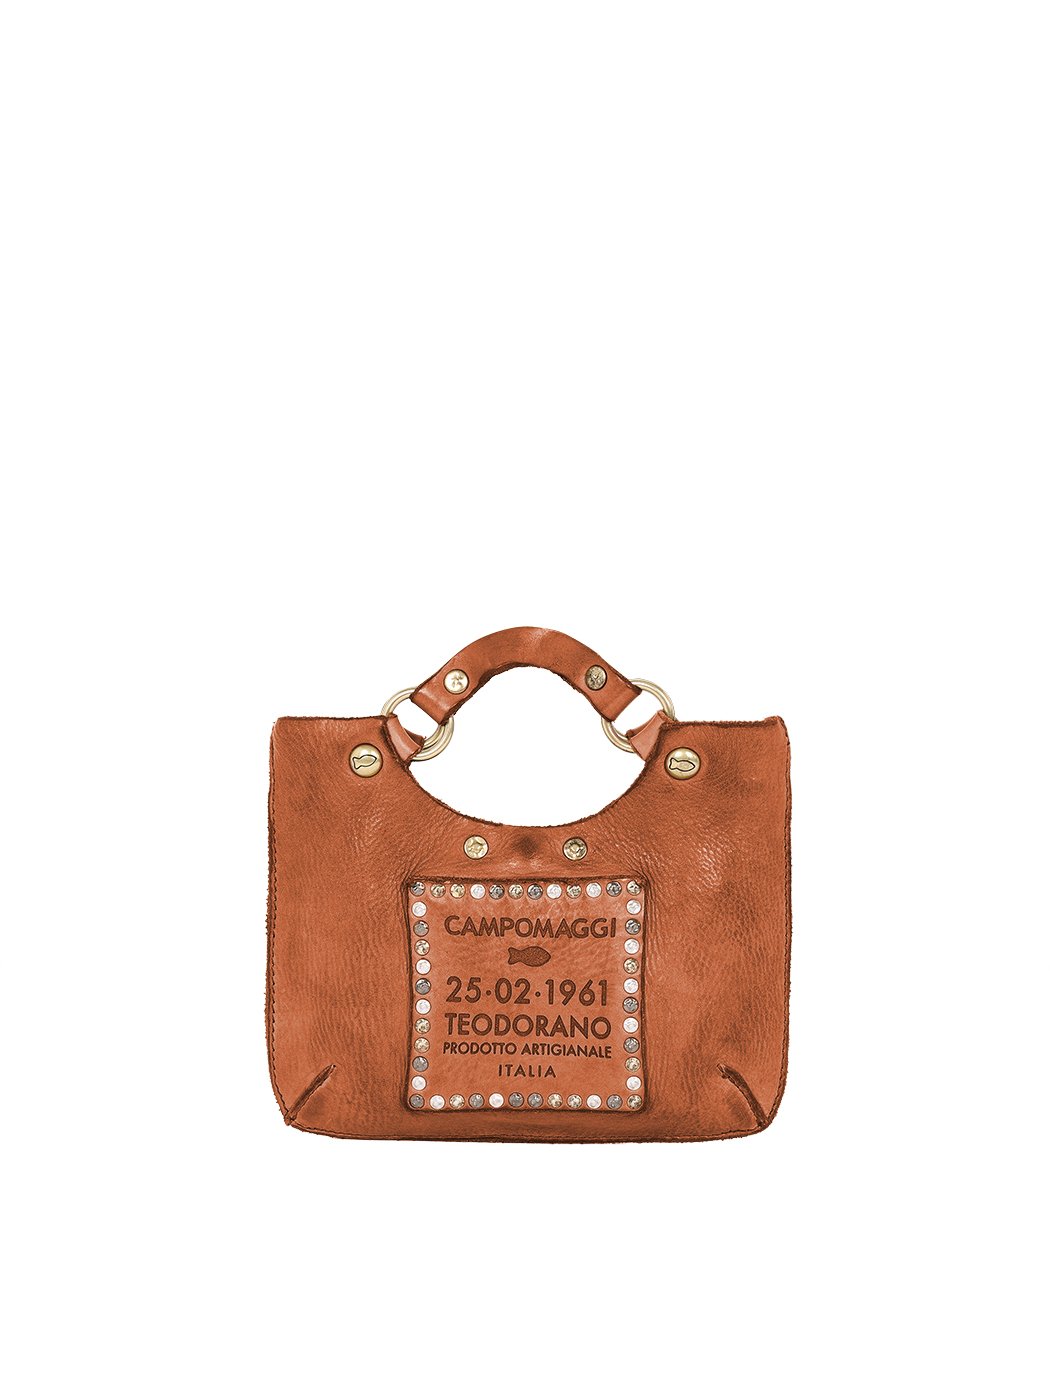 Мини - сумочка со съемным плечевым ремнем коричневого цвета